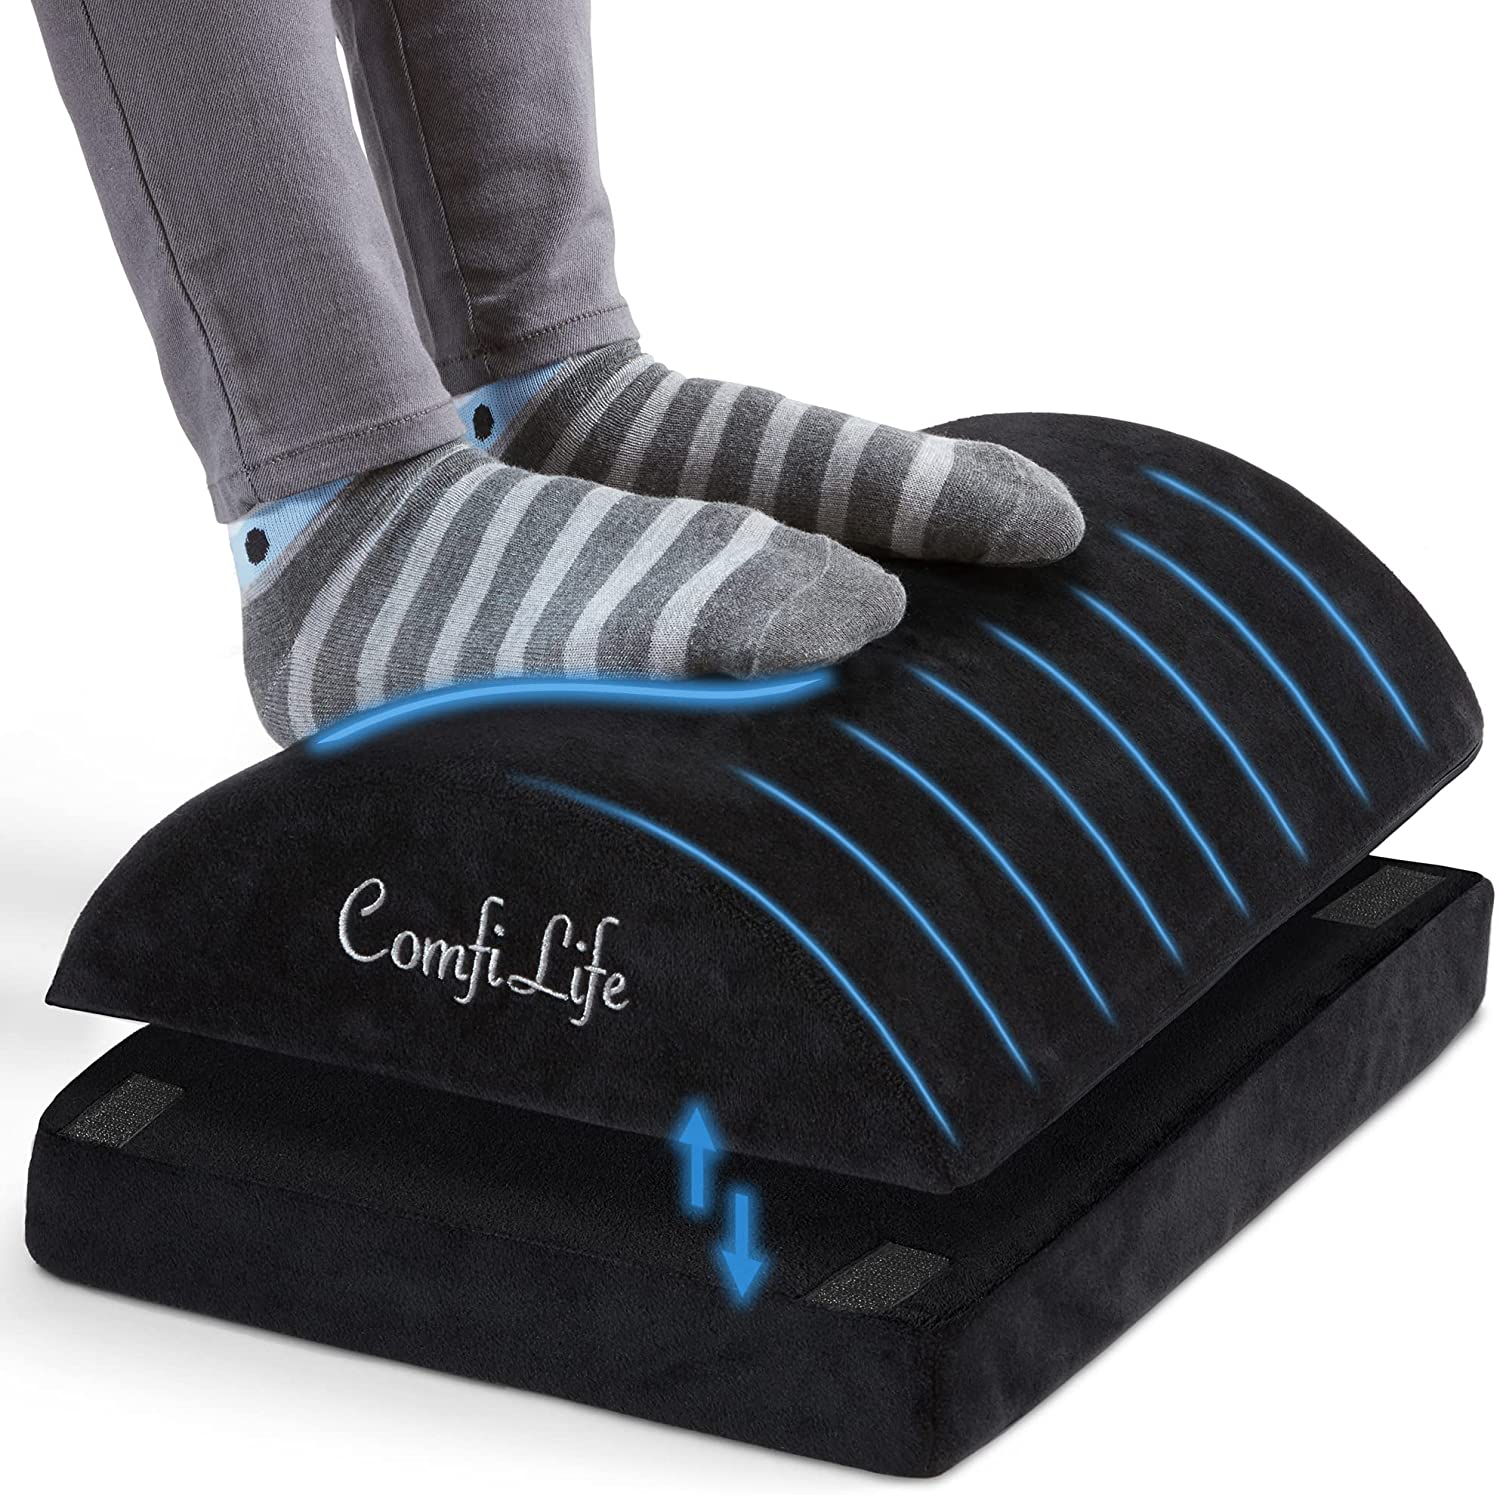 Adjustable Ergonomic Foot Rest under desk foot rest for improved posture 